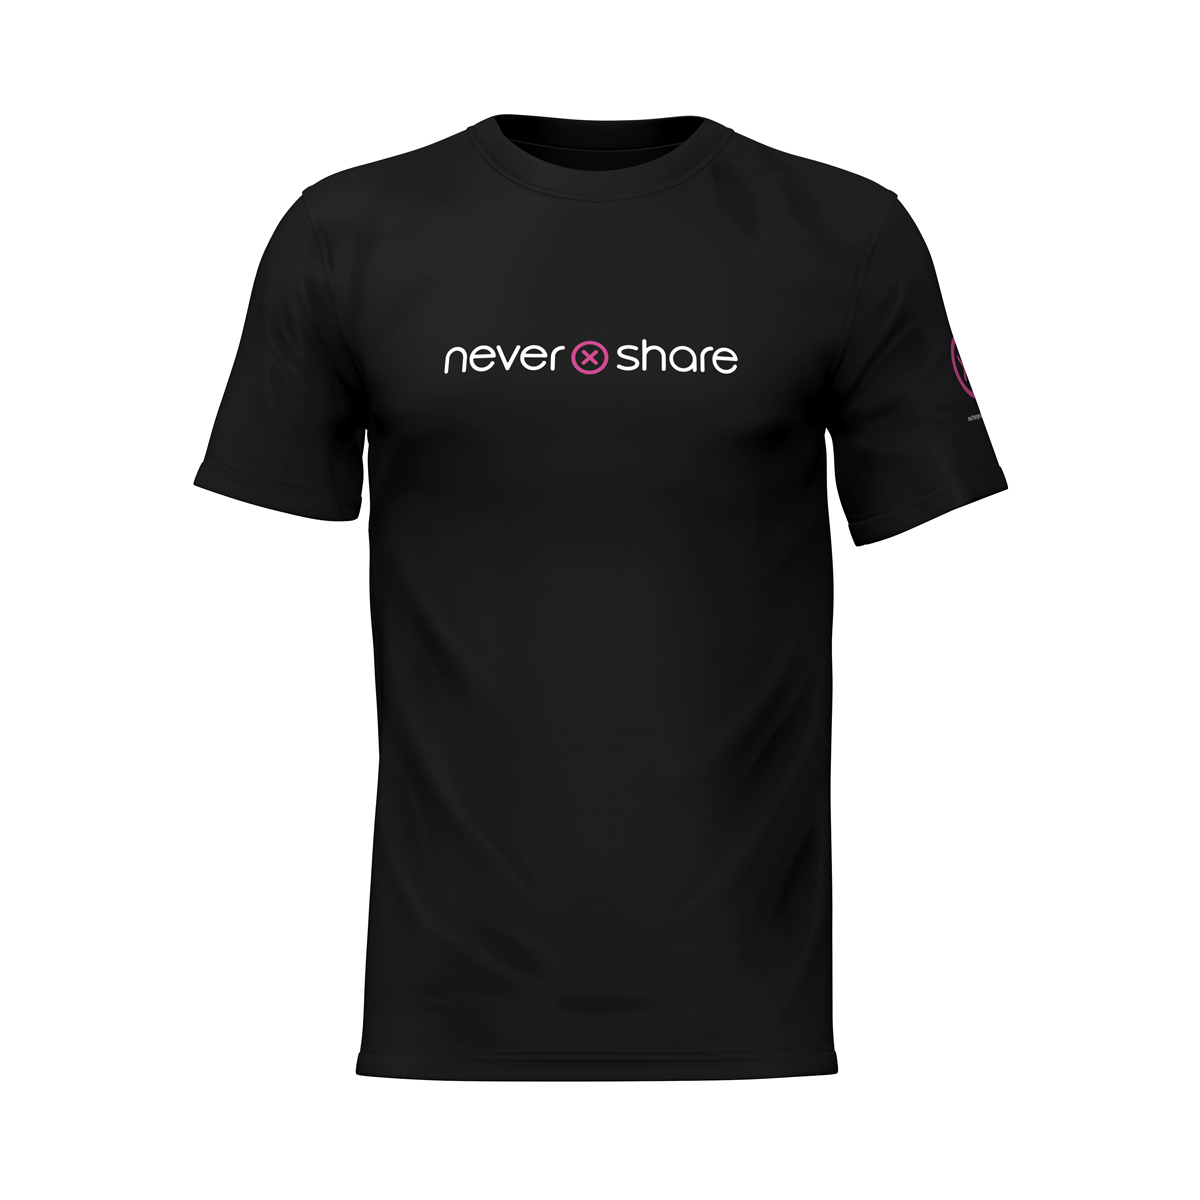 Nevershare T-shirt (small)